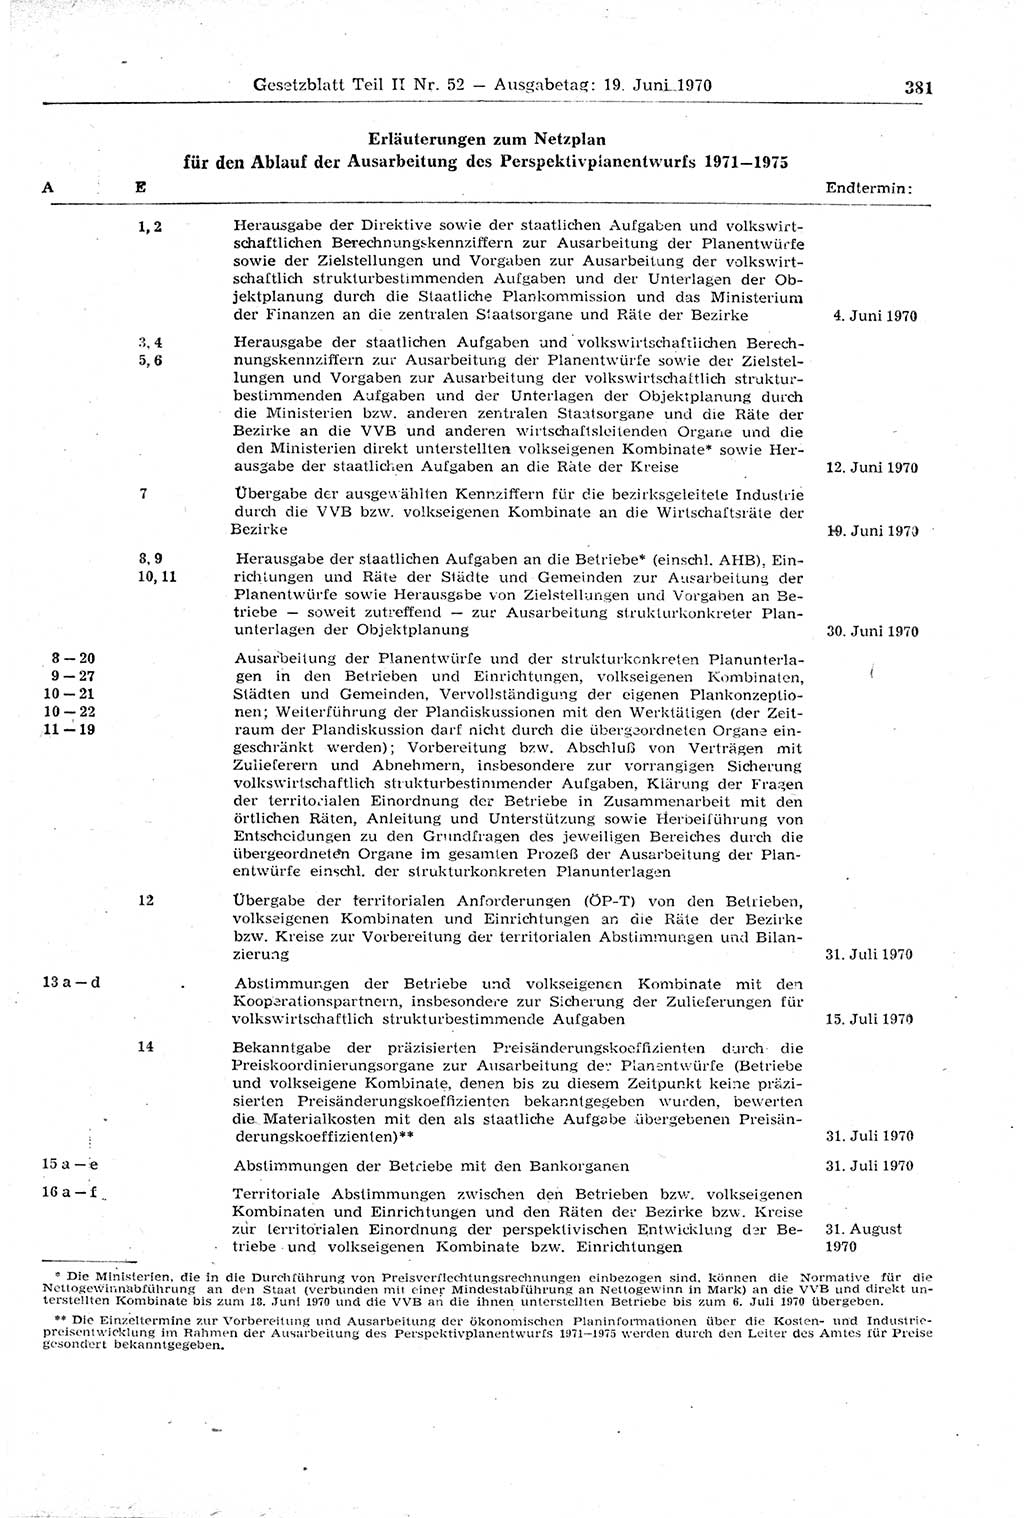 Gesetzblatt (GBl.) der Deutschen Demokratischen Republik (DDR) Teil ⅠⅠ 1970, Seite 381 (GBl. DDR ⅠⅠ 1970, S. 381)